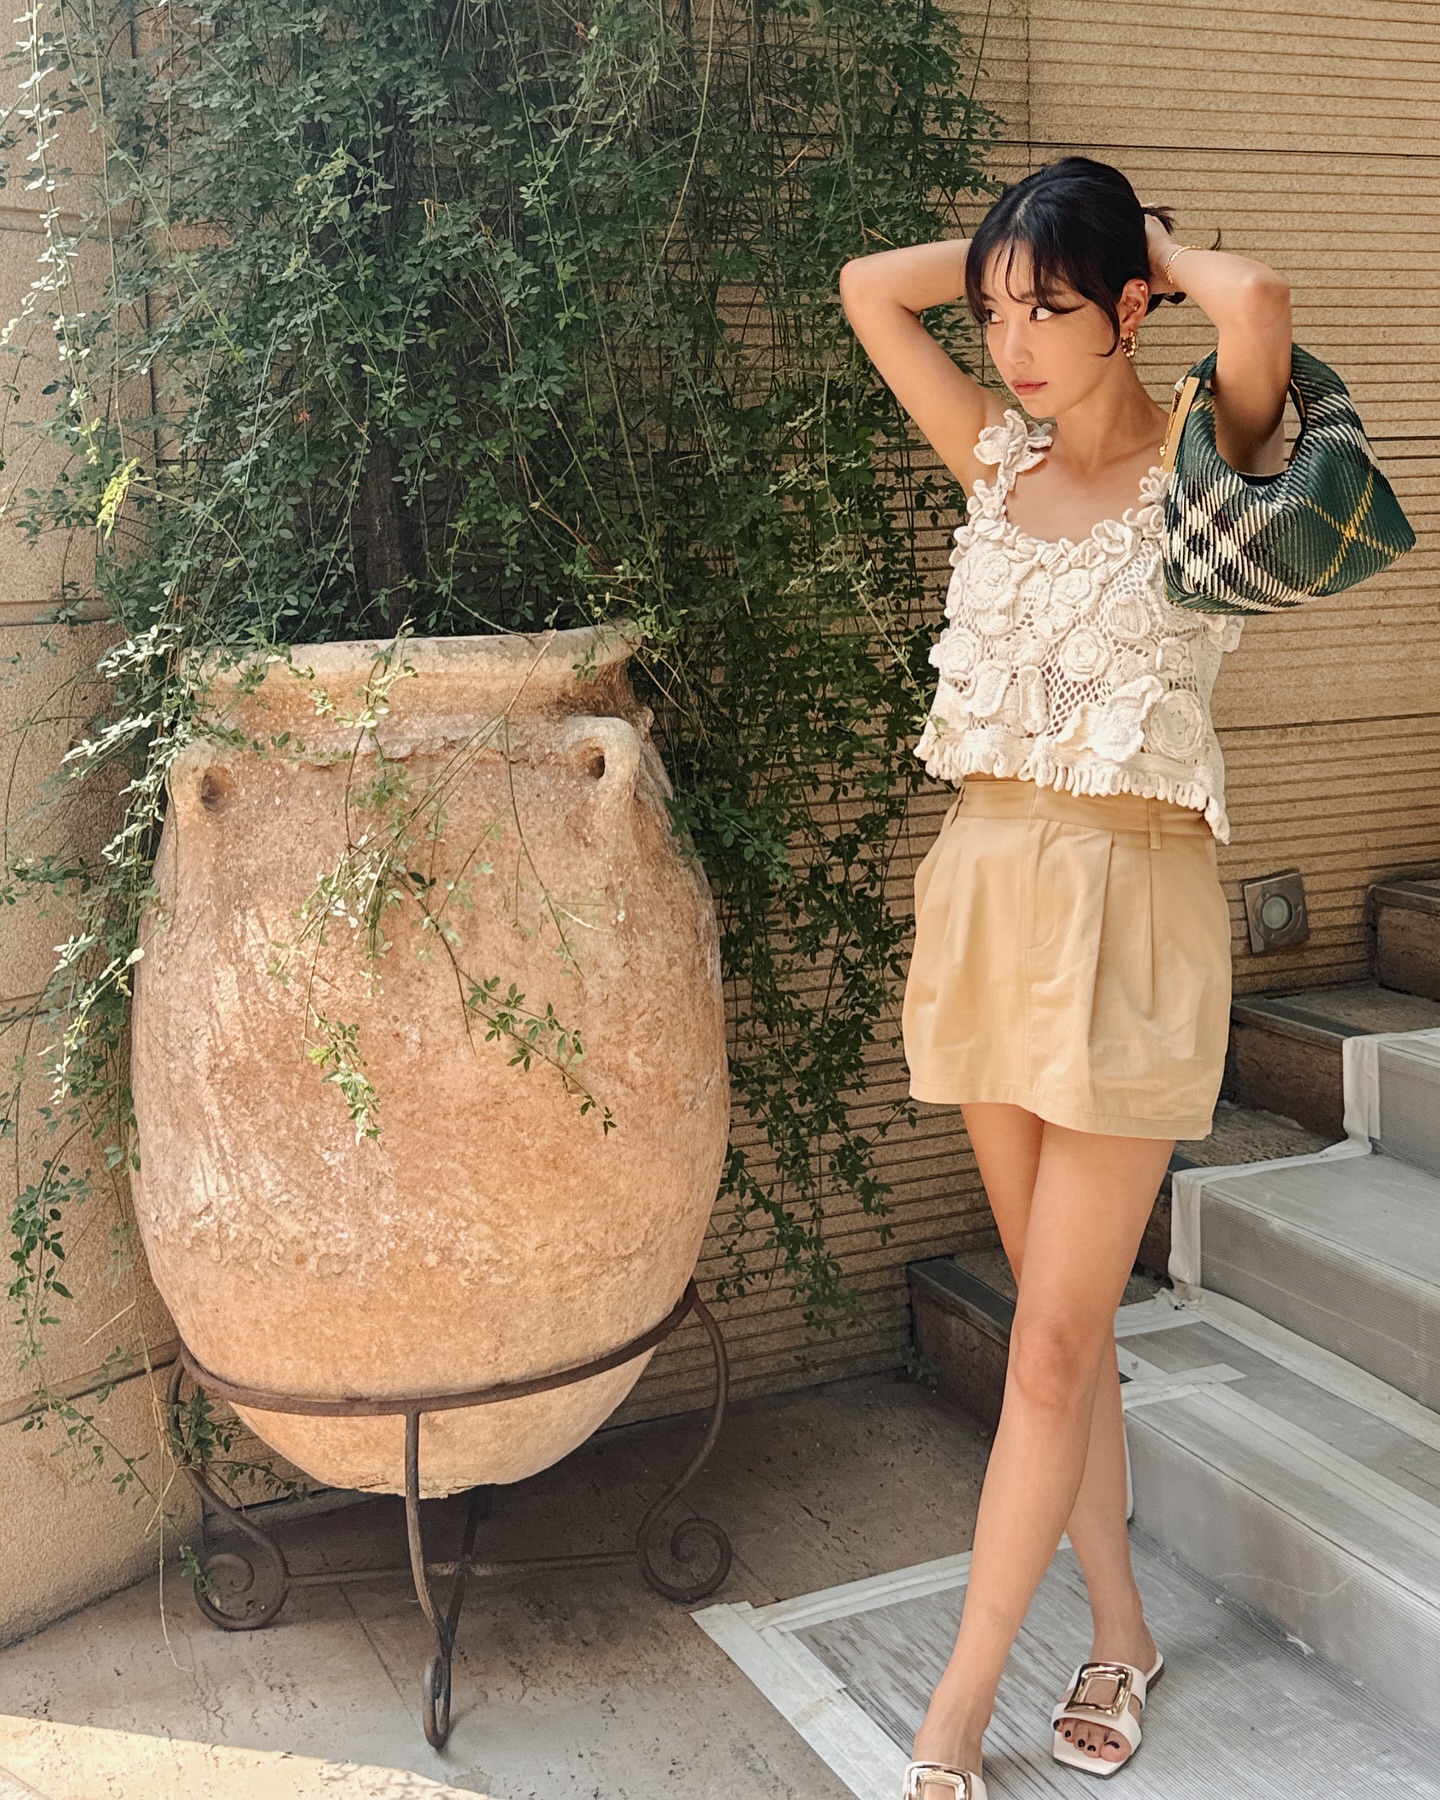 Thời trang mùa hè đẹp đỉnh cao của fashionista Hàn Quốc 41 tuổi, chị em nên tham khảo để sành điệu hơn - Ảnh 2.